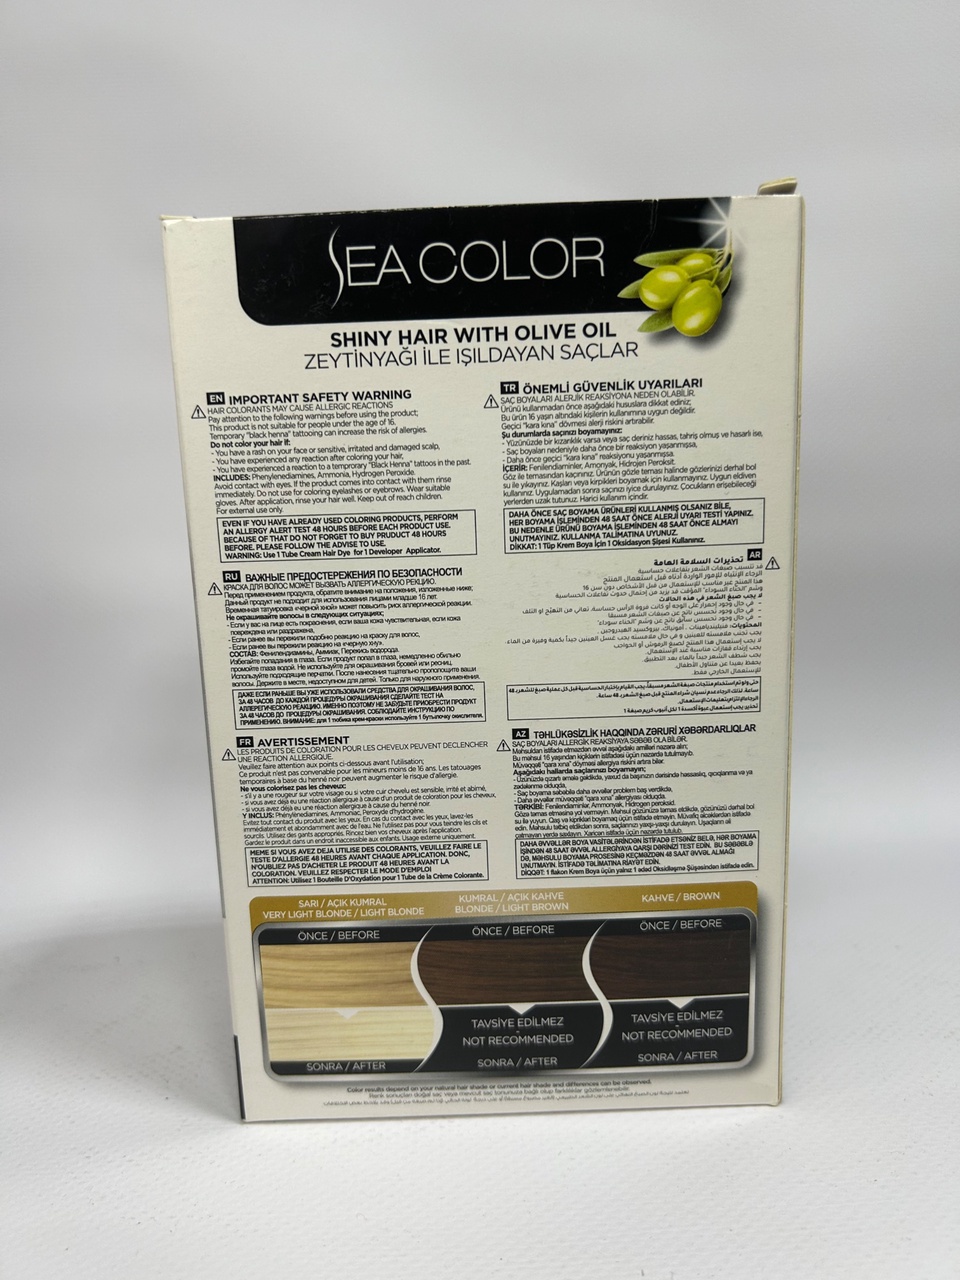 Sea Color 0.2 Краска д/волос «Бэби блондин» - 300 ₽, заказать онлайн.